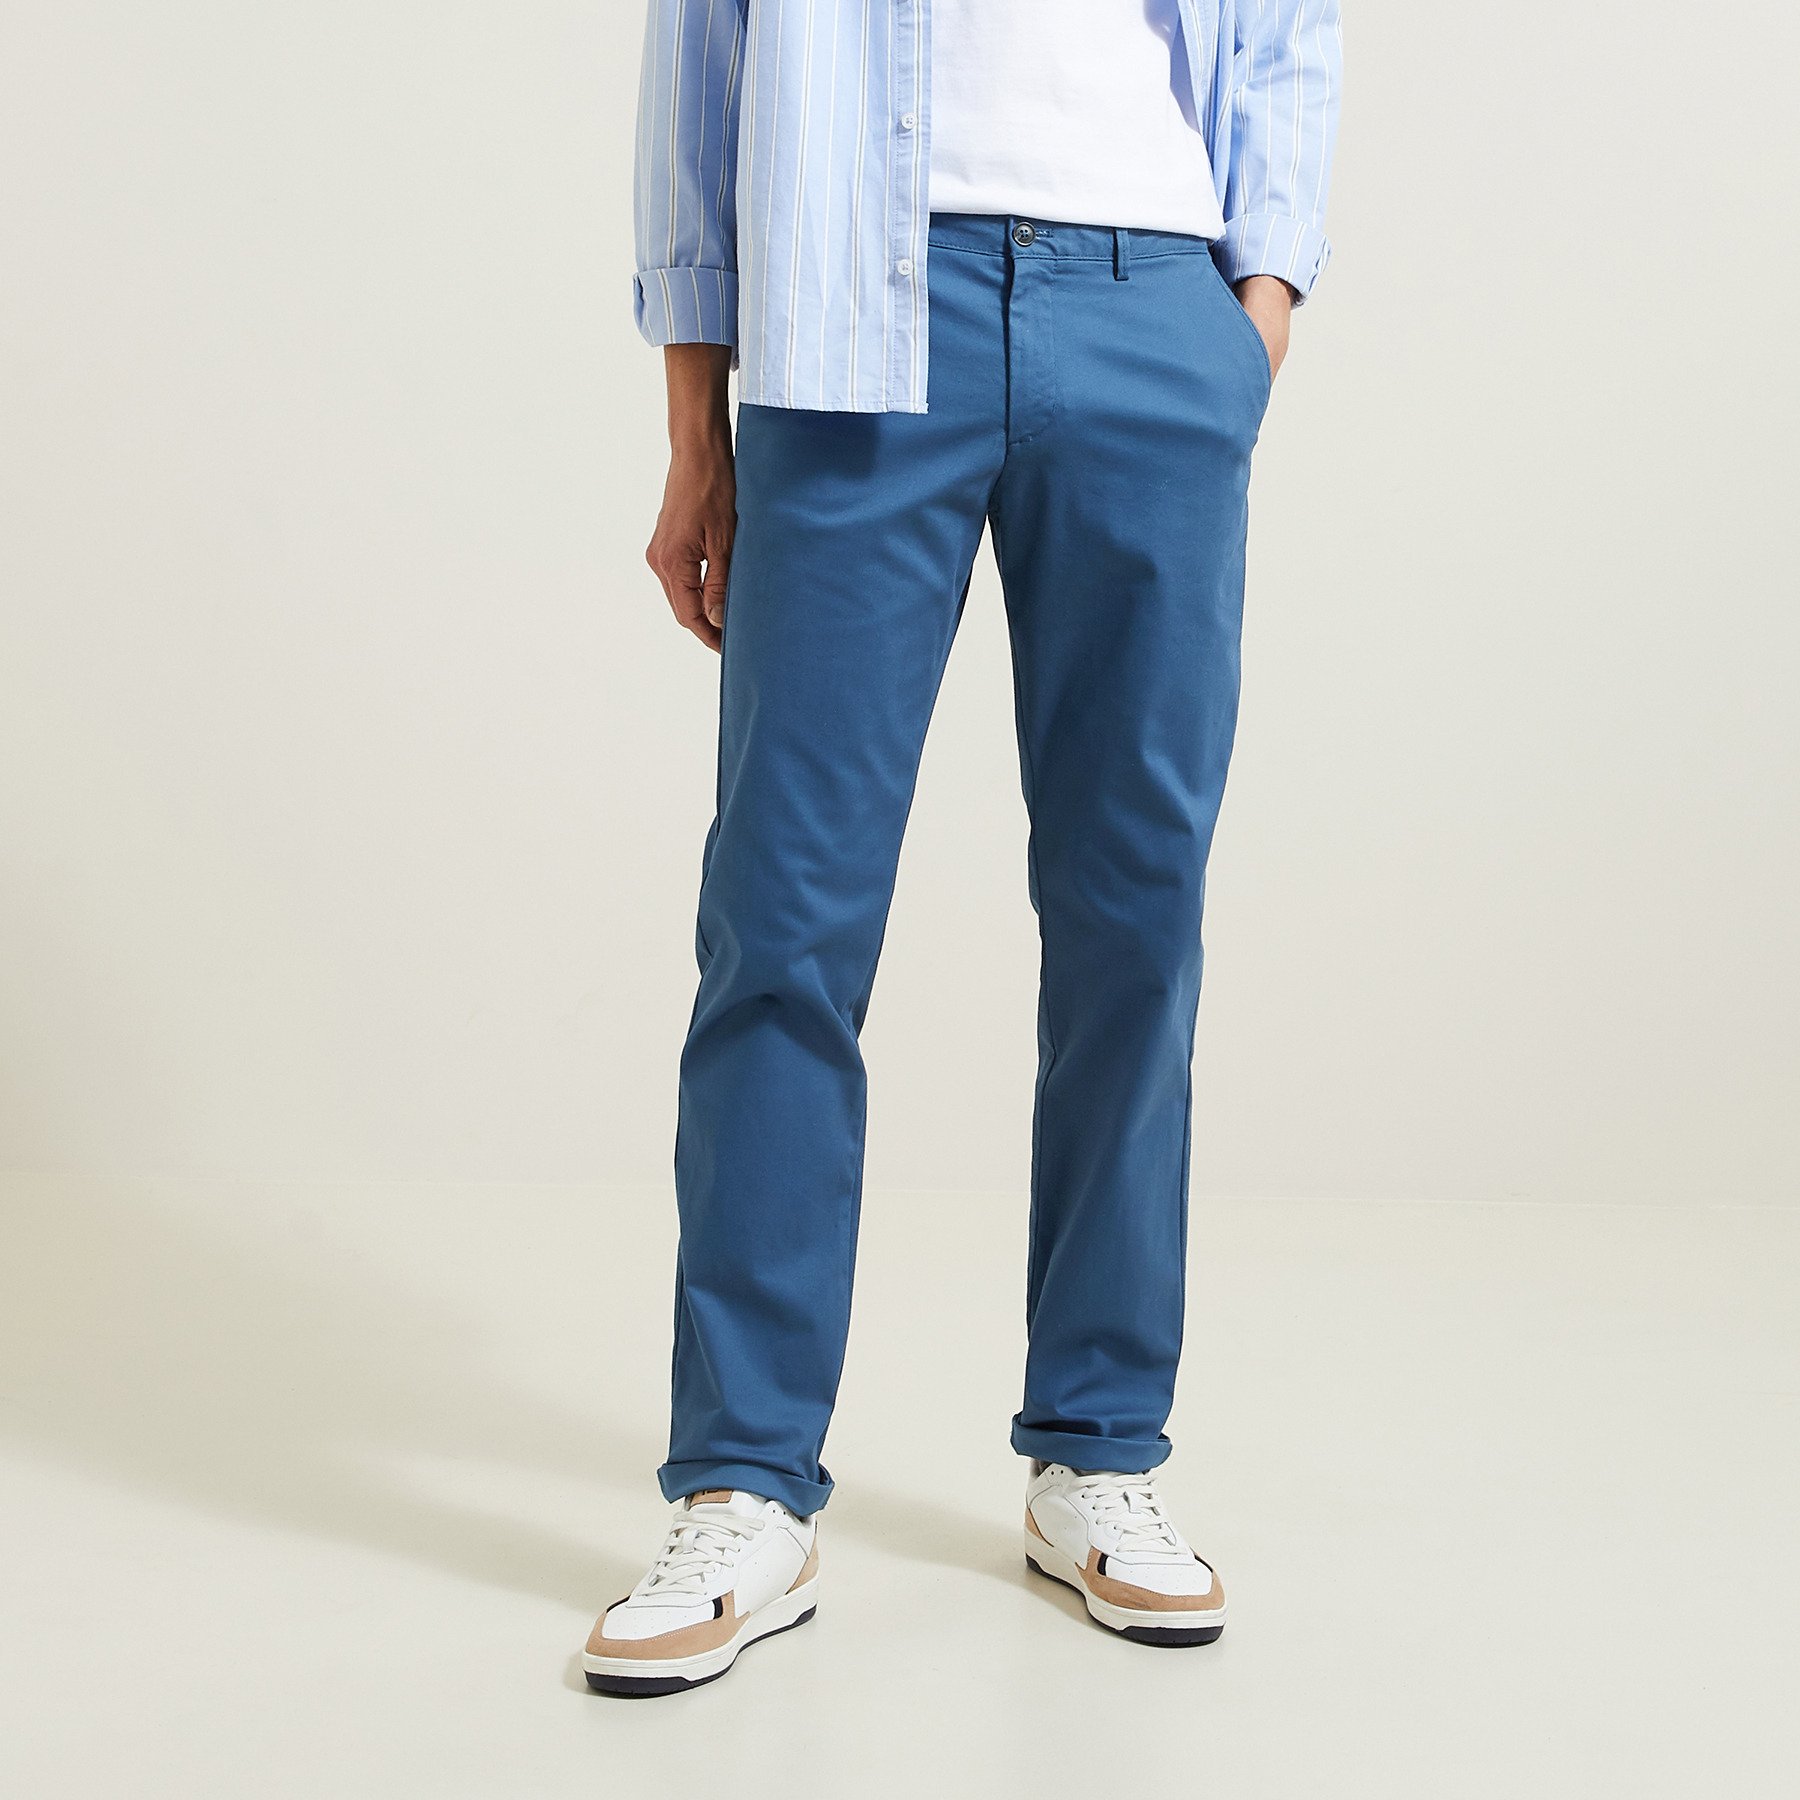 Pantalon chino regular "le parfait by JULES" Bleu 44 98% Coton, 2% Elasthanne Homme